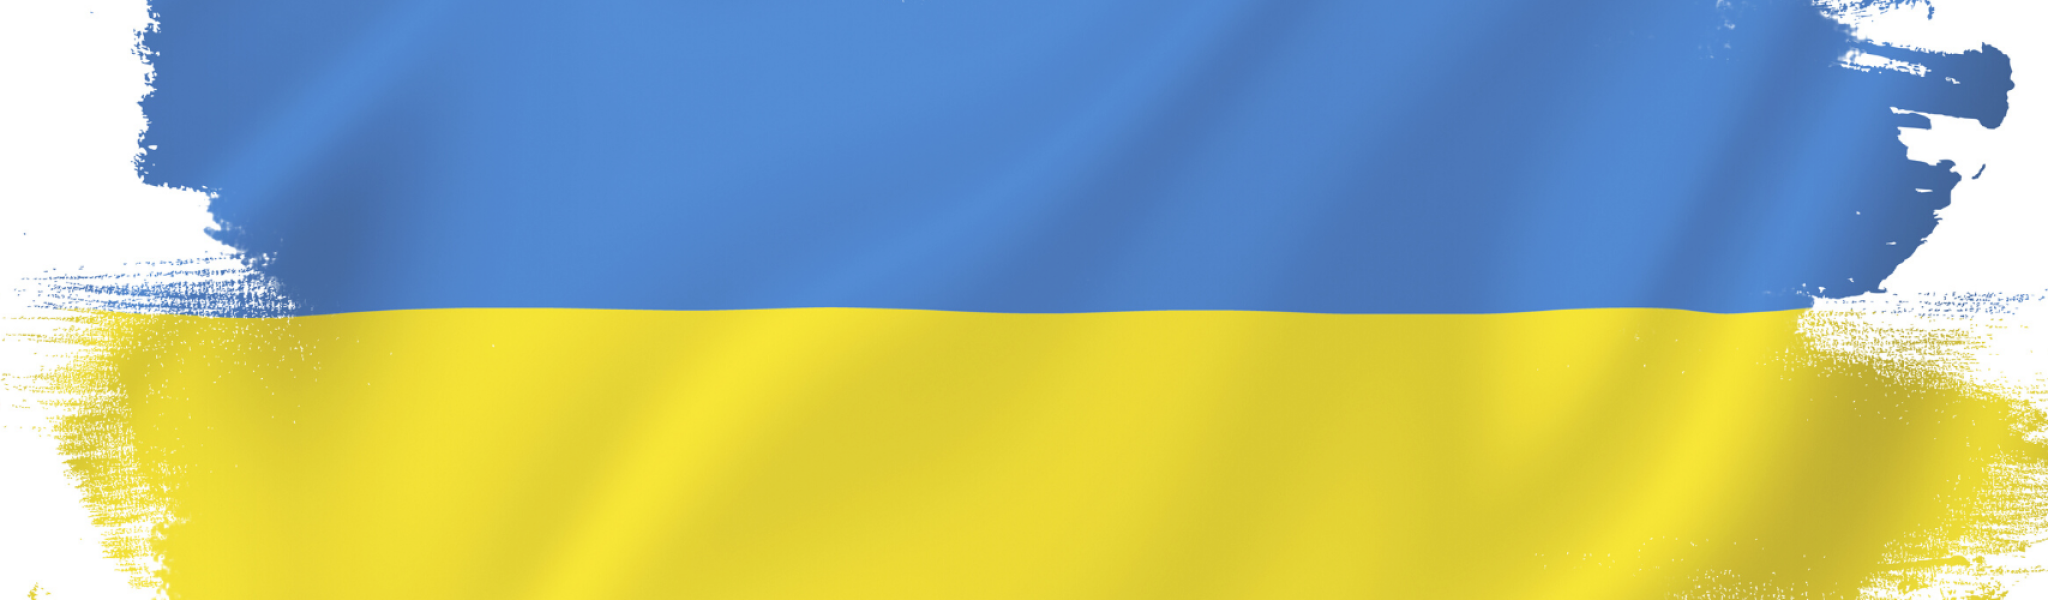 Paint colors to symbolize Ukraine Flag